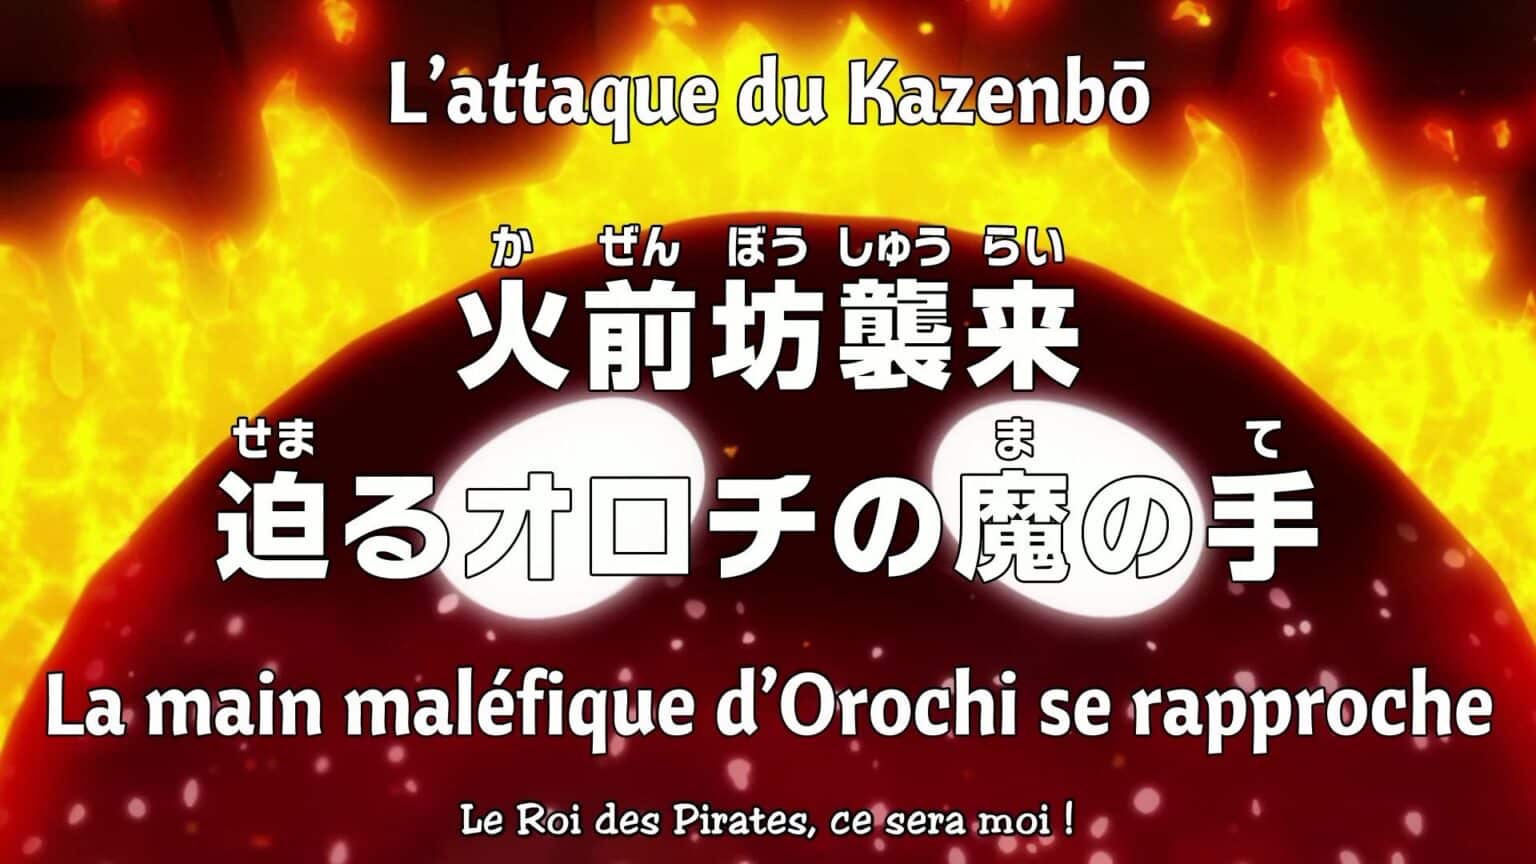 One piece 1058 vostfr - « L'attaque du Kazenbo ! main maléfique d'Orochi se rapproche ! »